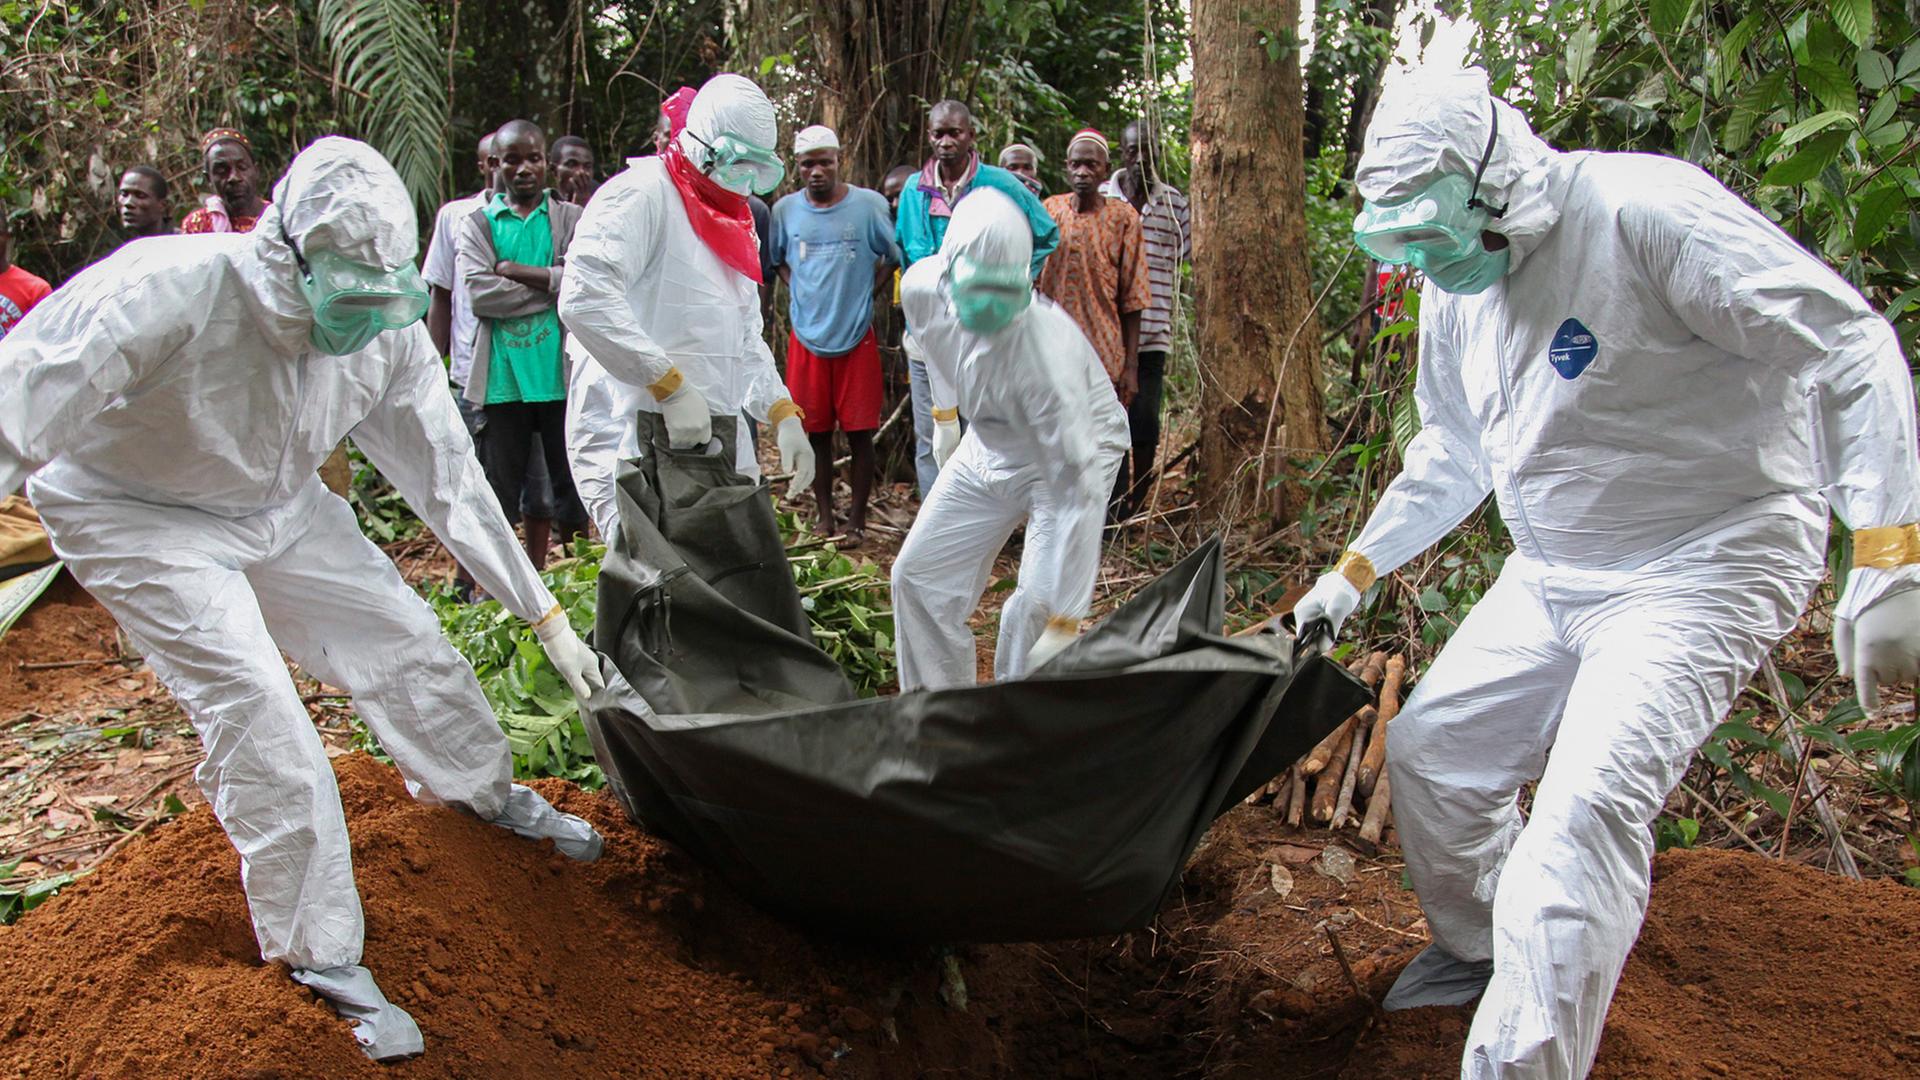 Ein Ebola-Toter wird von Menschen in Schutzanzügen beerdigt.